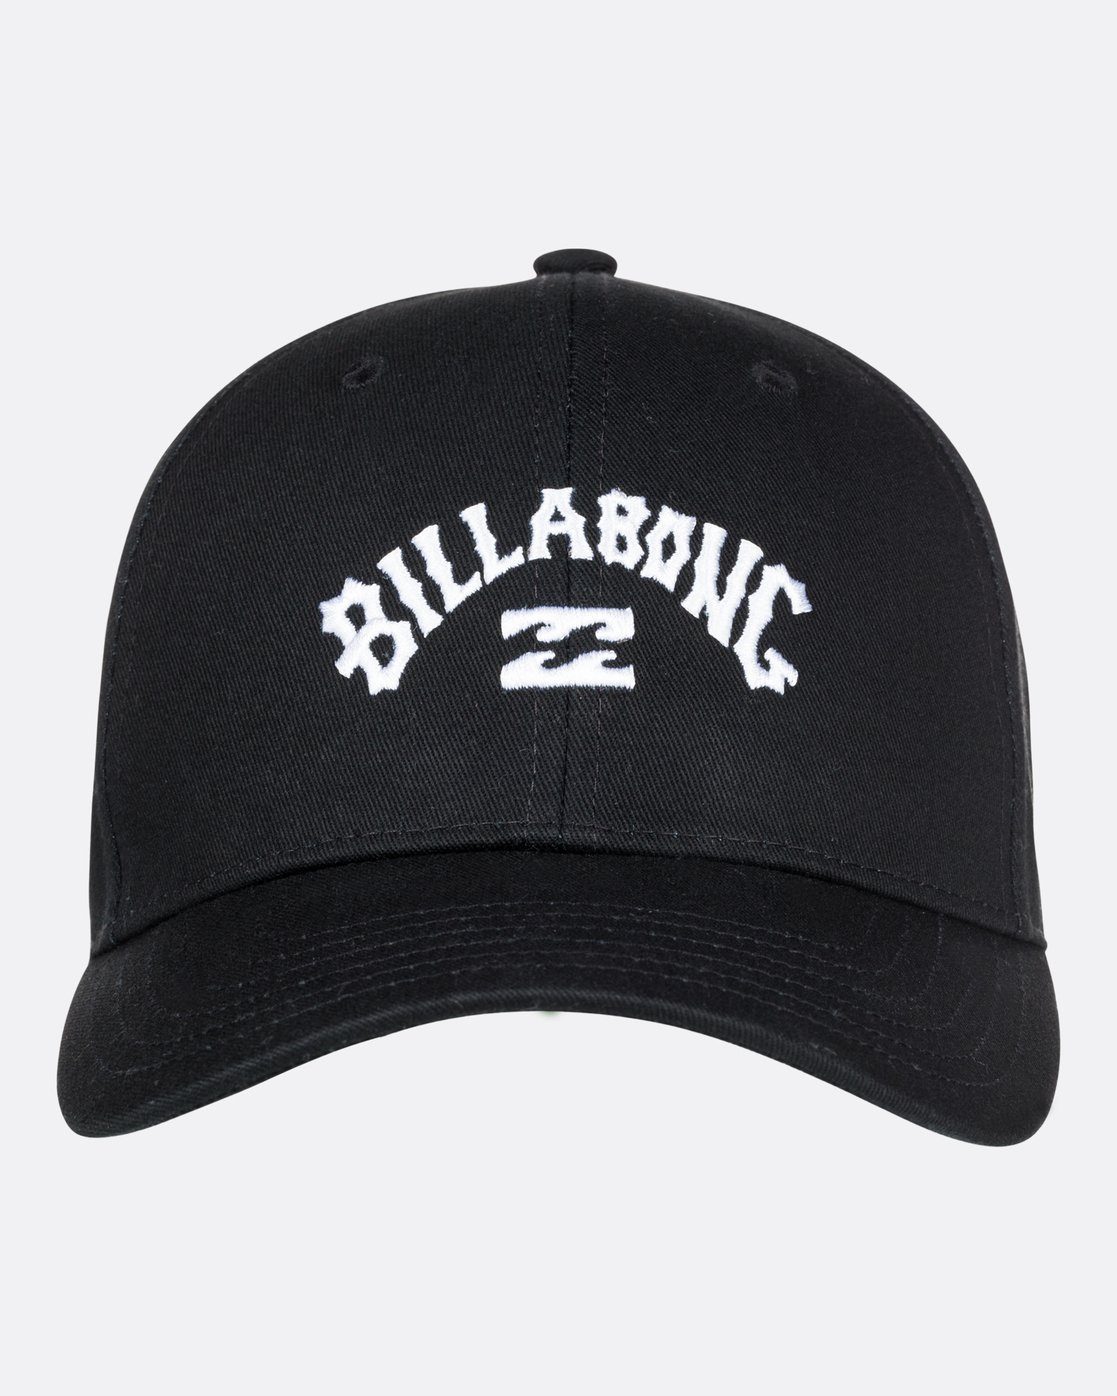 Billabong Snapback Arch Black Cap